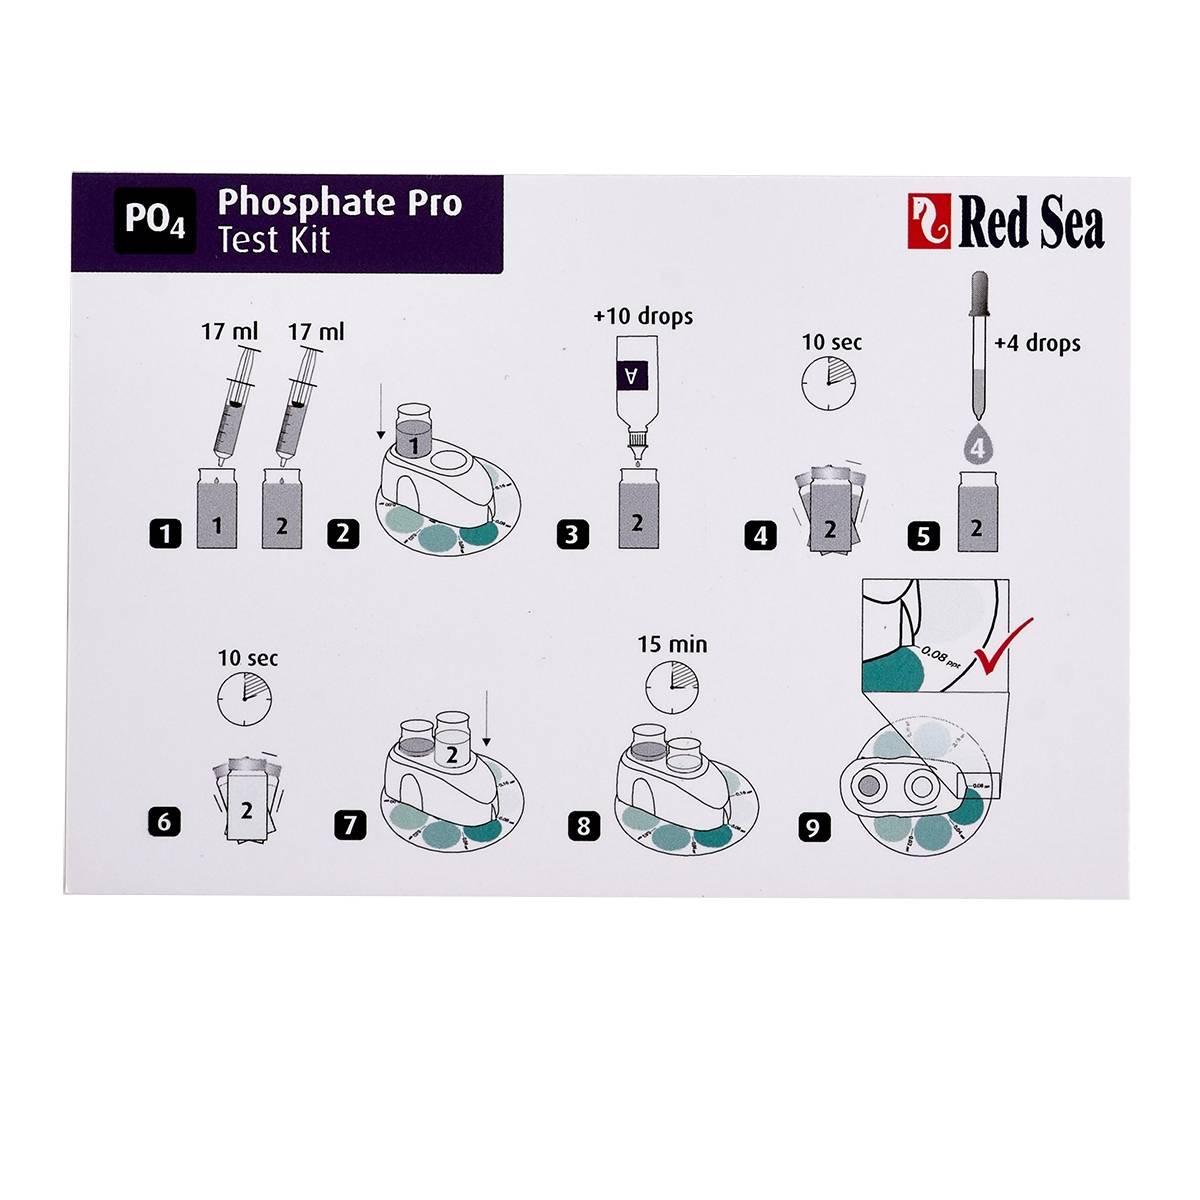 Phosphate Pro (PO4) test kit - Red Sea